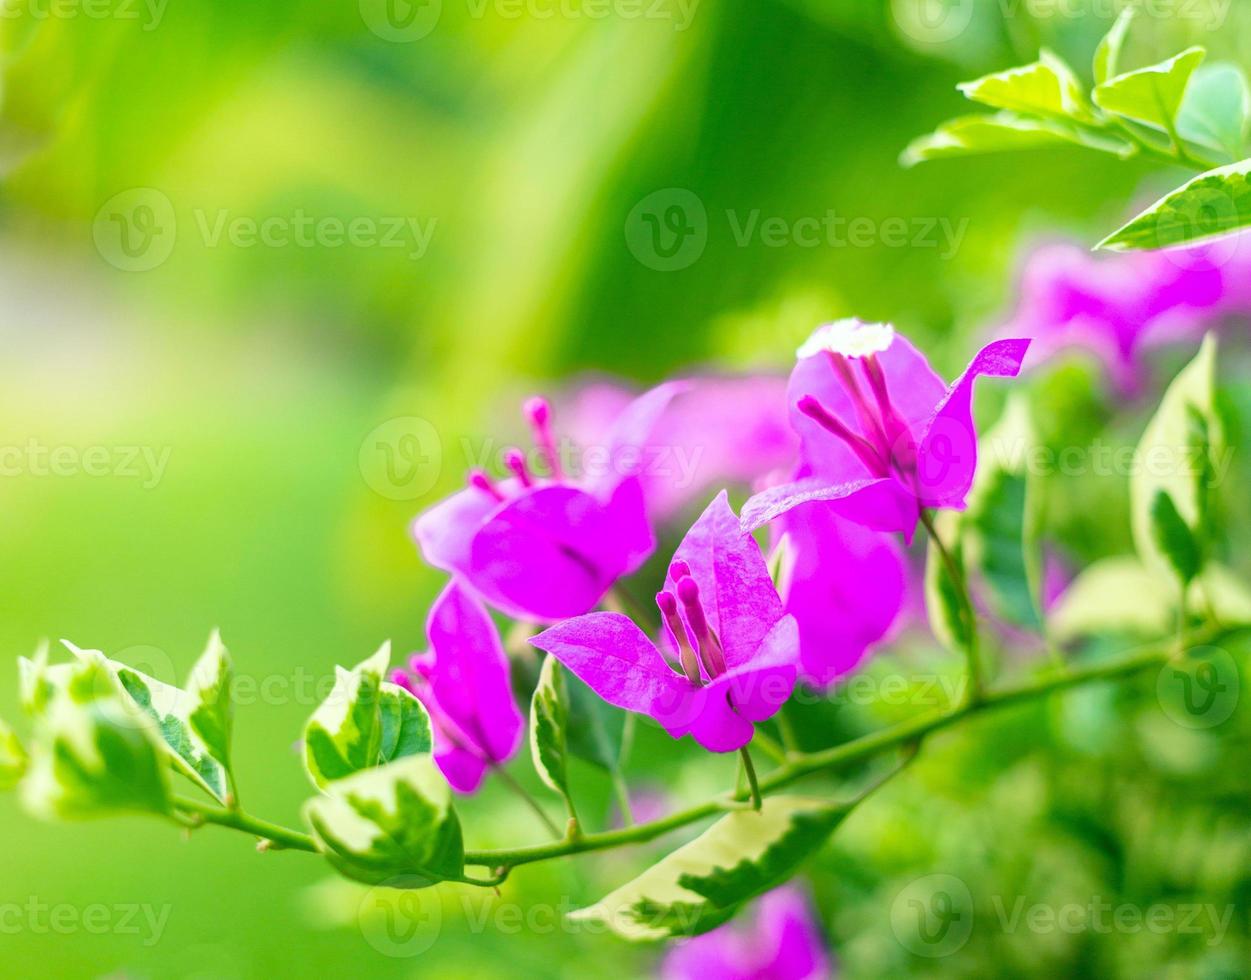 la fleur de bougainvillier pourpre est magnifique sur fond de feuille verte de fleur épanouie. les fleurs de bougainvilliers violets poussent au printemps et la nature prend vie photo